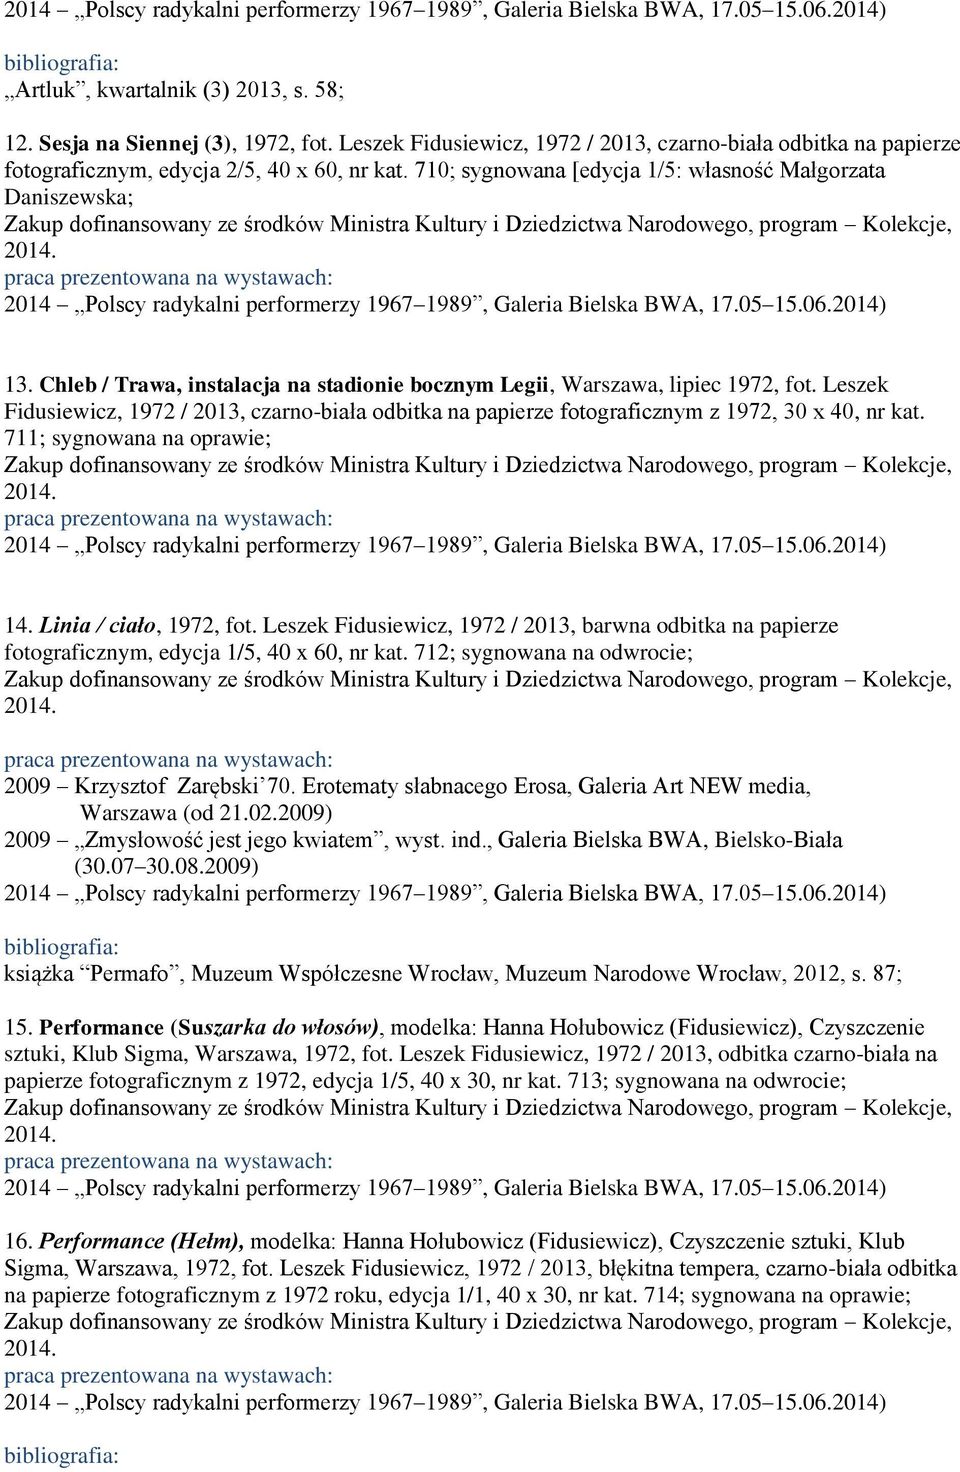 Leszek Fidusiewicz, 1972 / 2013, czarno-biała odbitka na papierze fotograficznym z 1972, 30 x 40, nr kat. 711; sygnowana na oprawie; 14. Linia / ciało, 1972, fot.